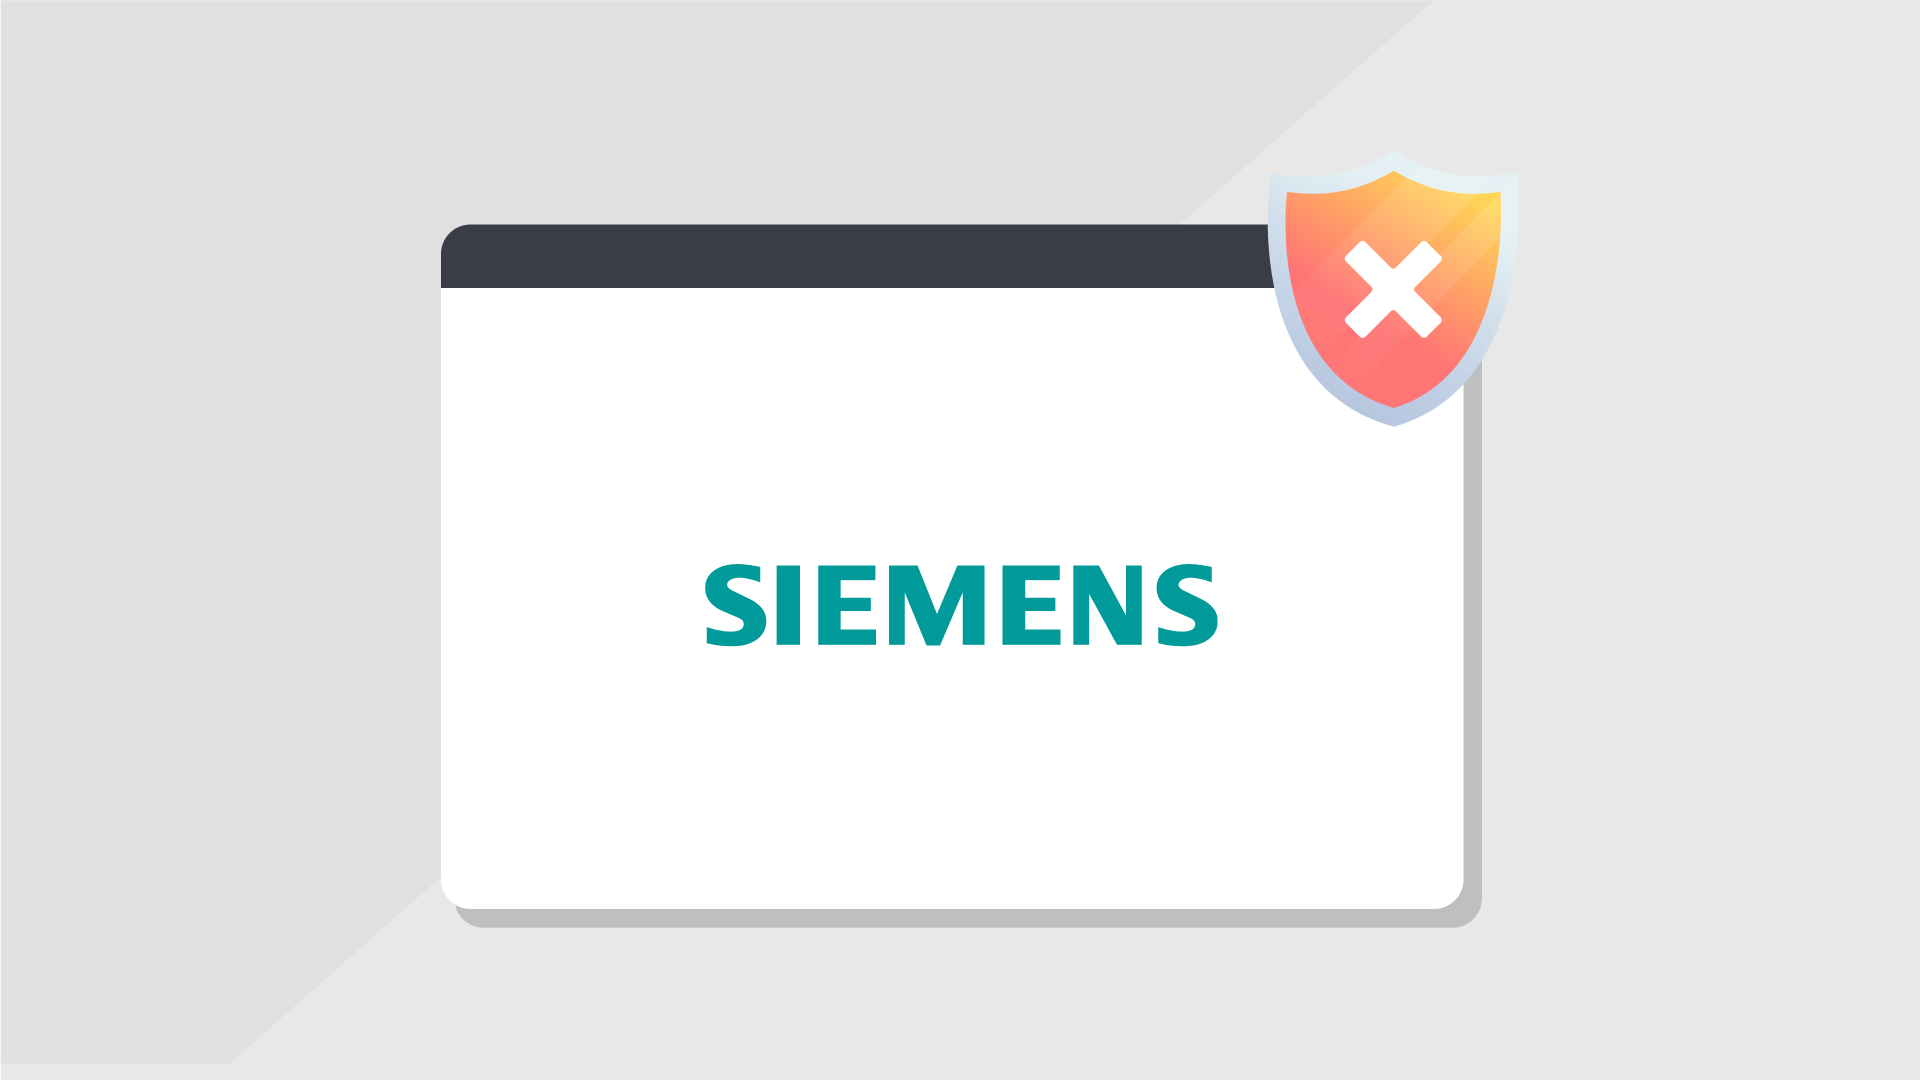 Siemens-OT-Vulnerability